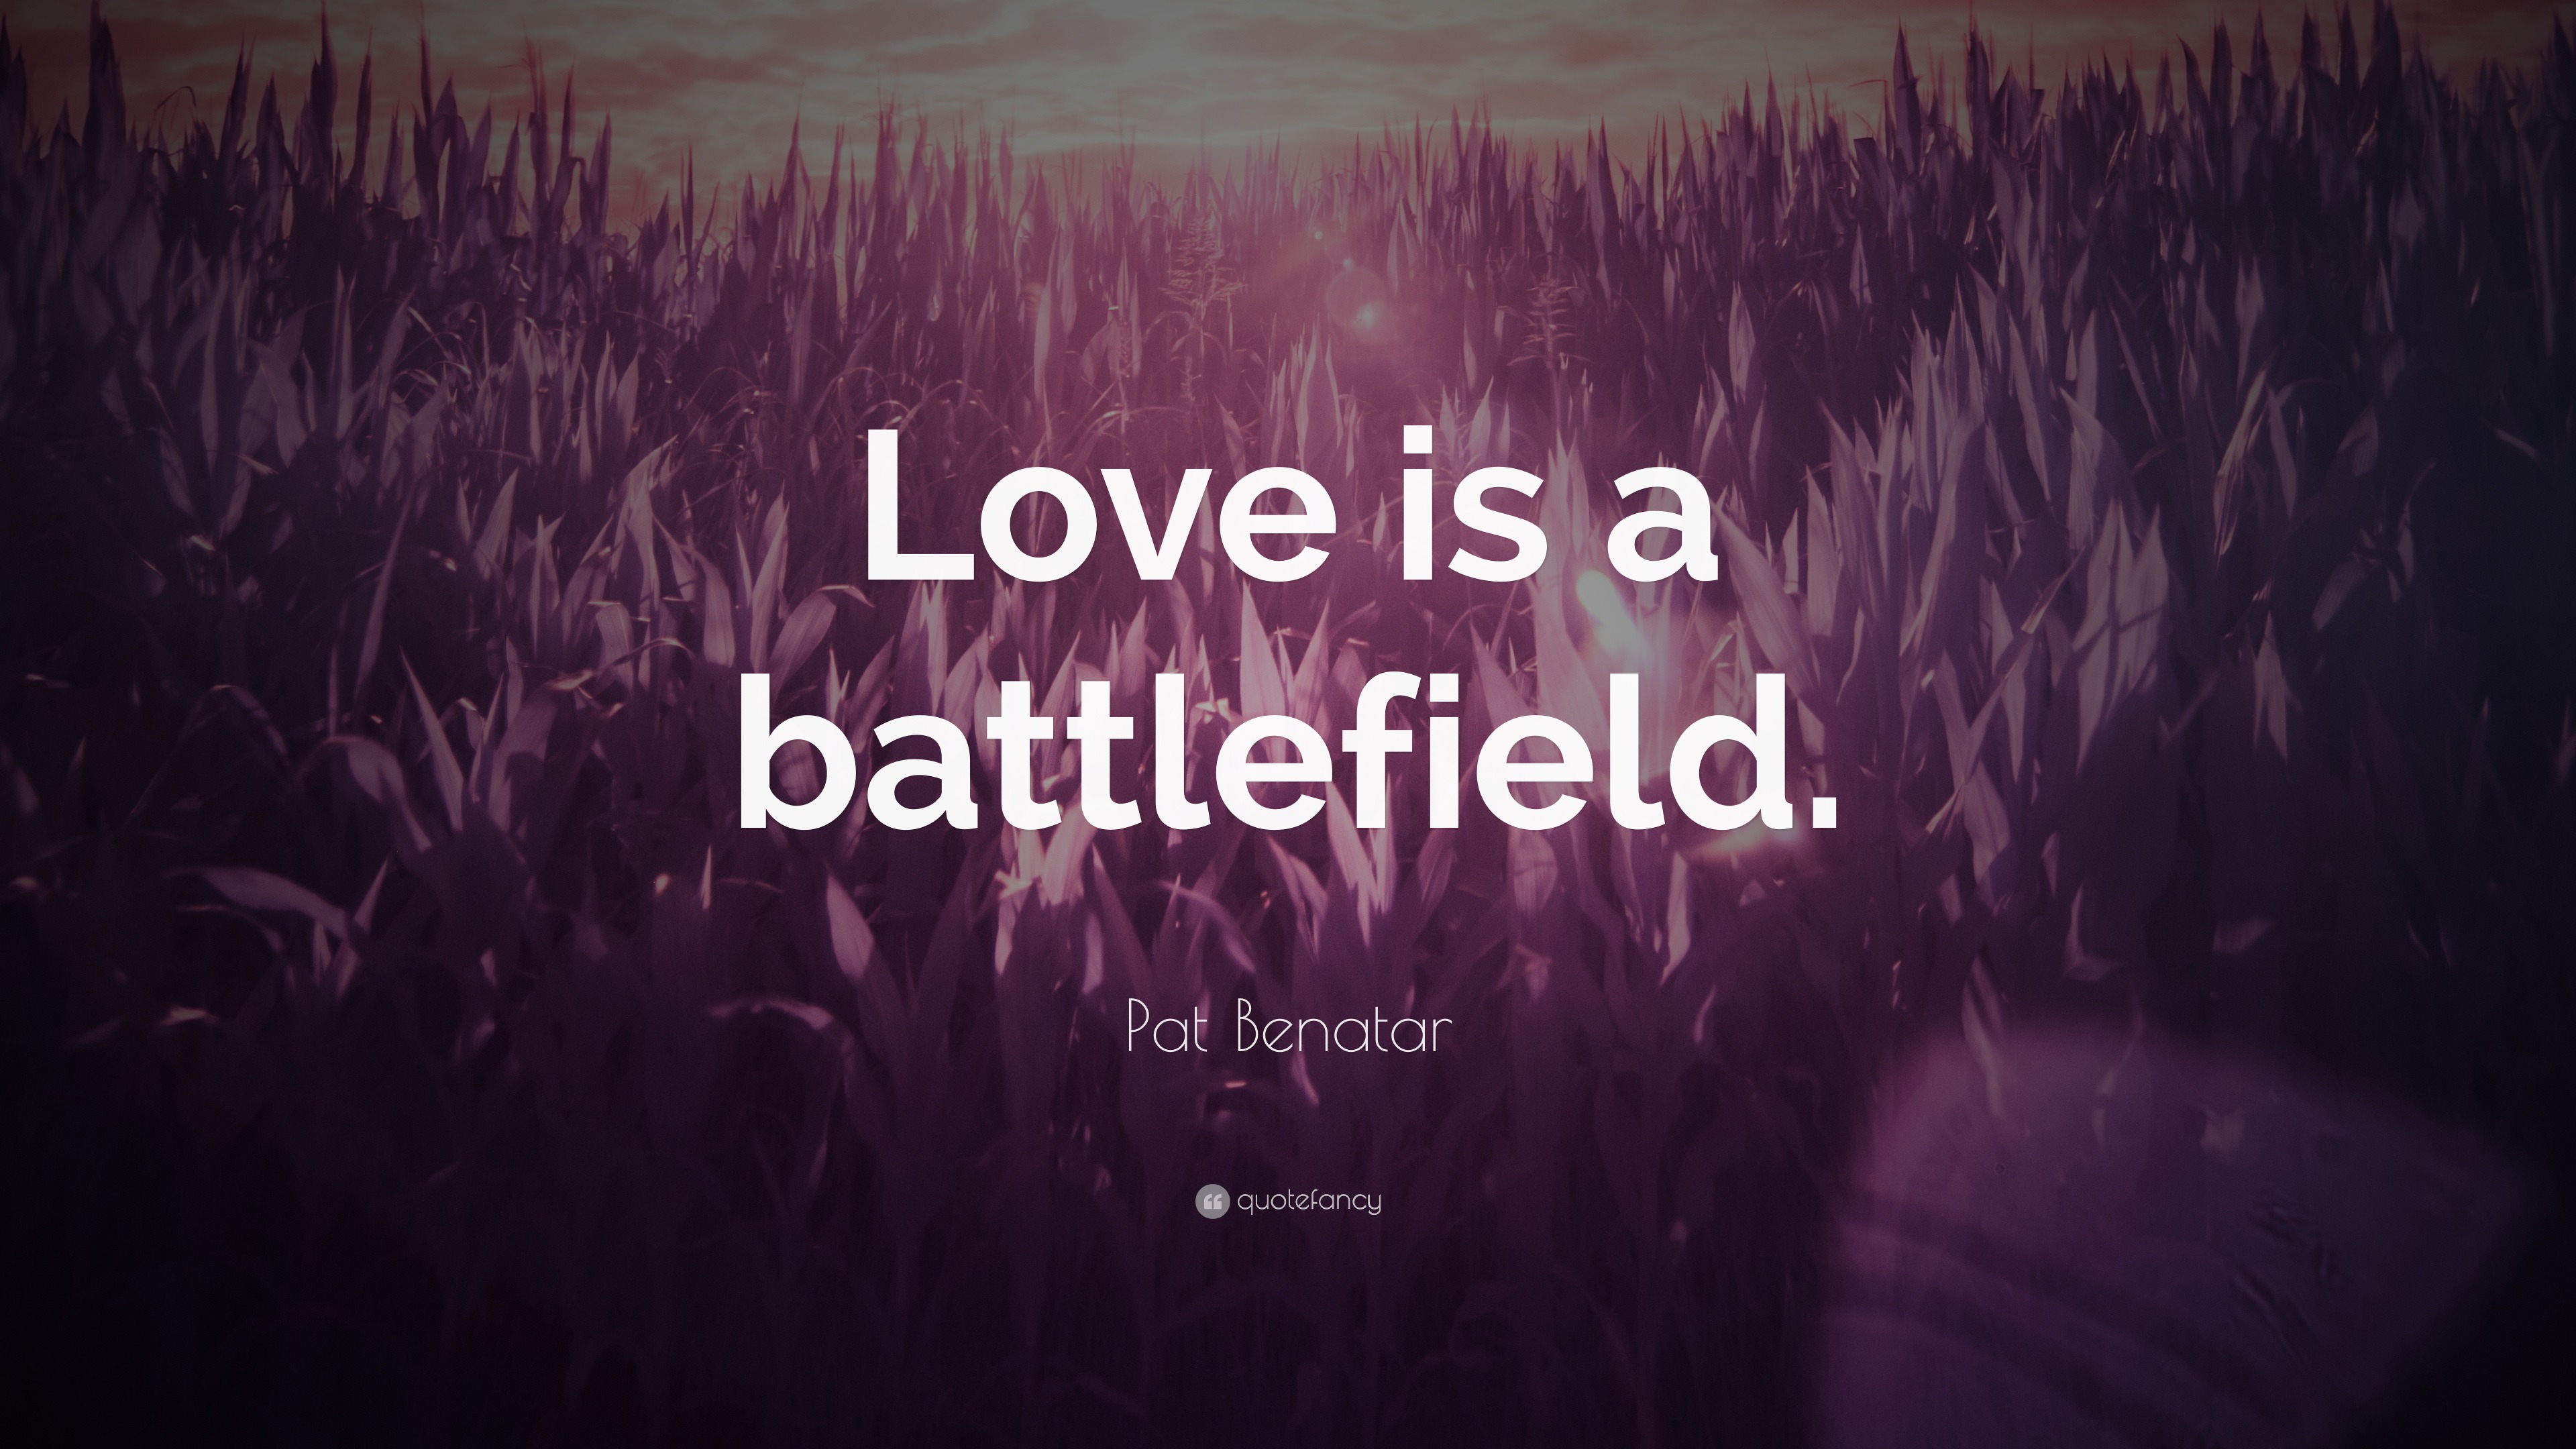 pat benatar love is a battlefield